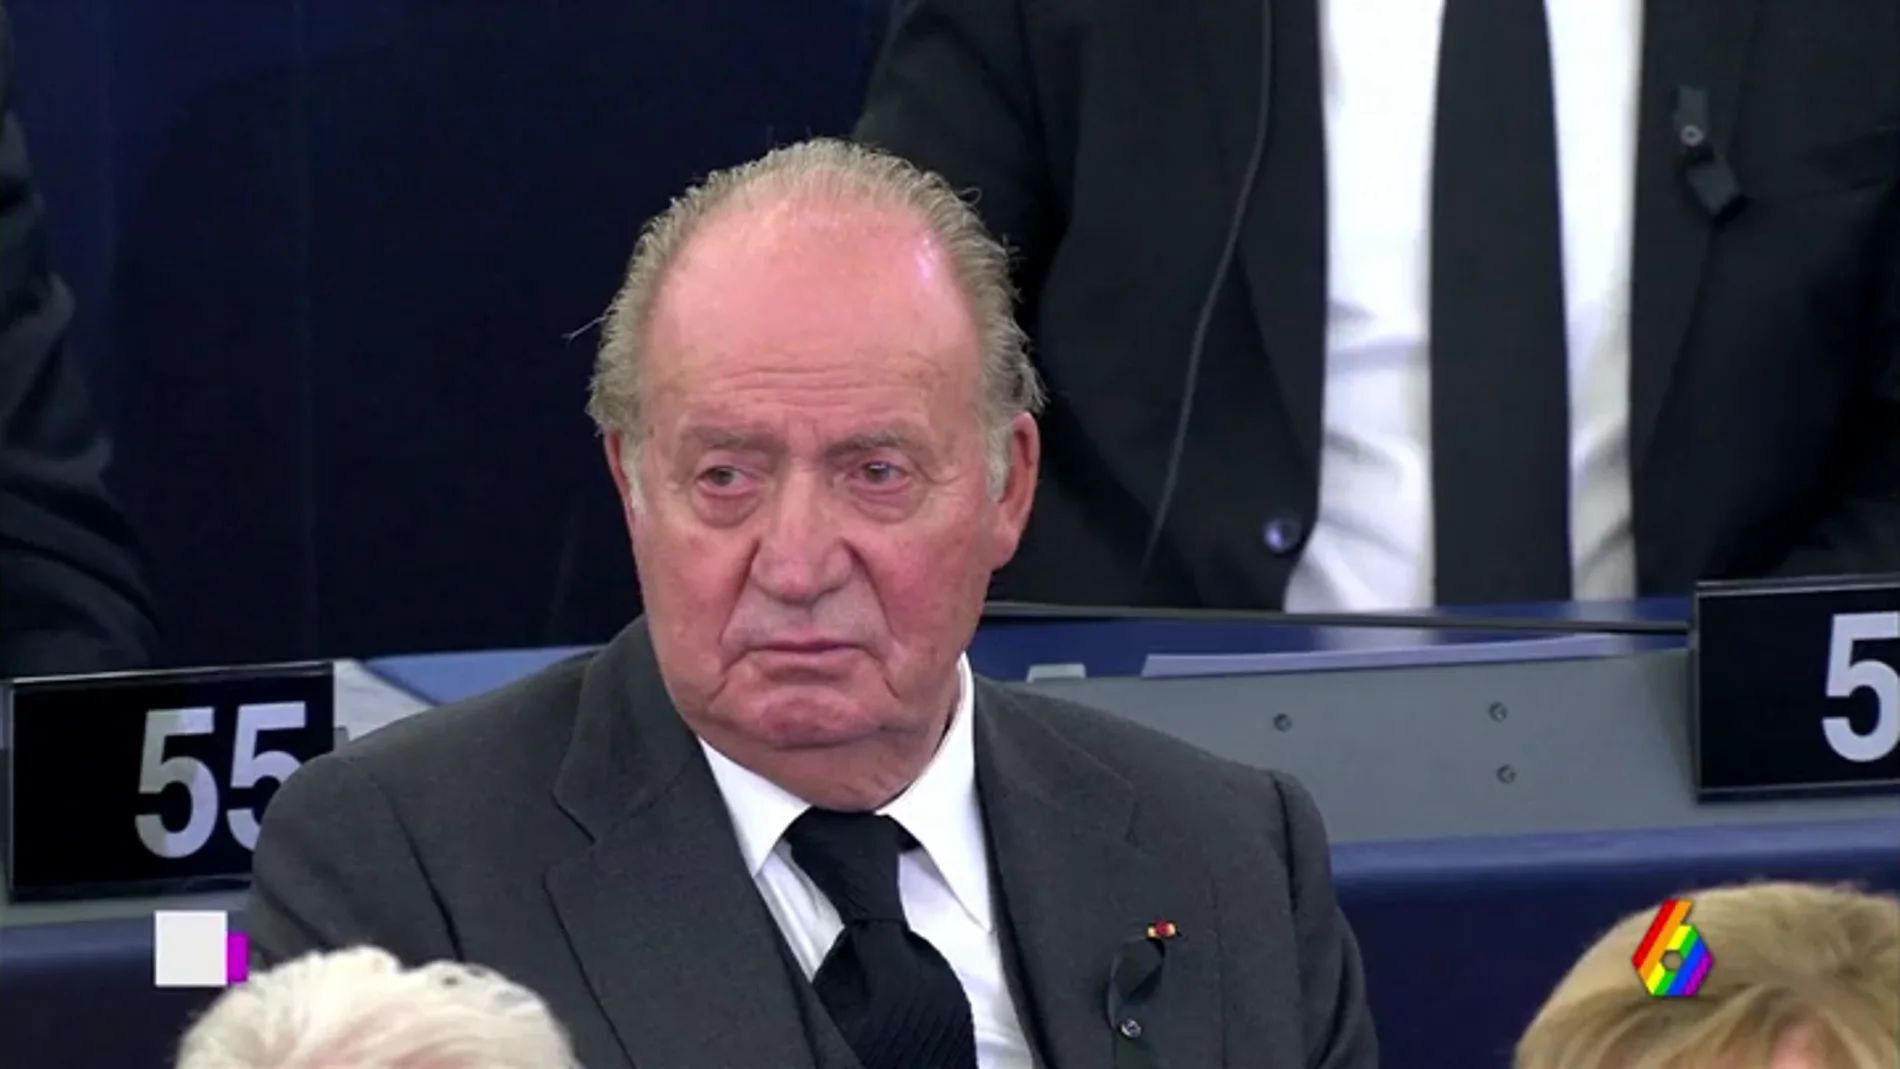 El rey Juan Carlos reaparece en el homenaje a Kohl tras su ausencia en el aniversario de las elecciones